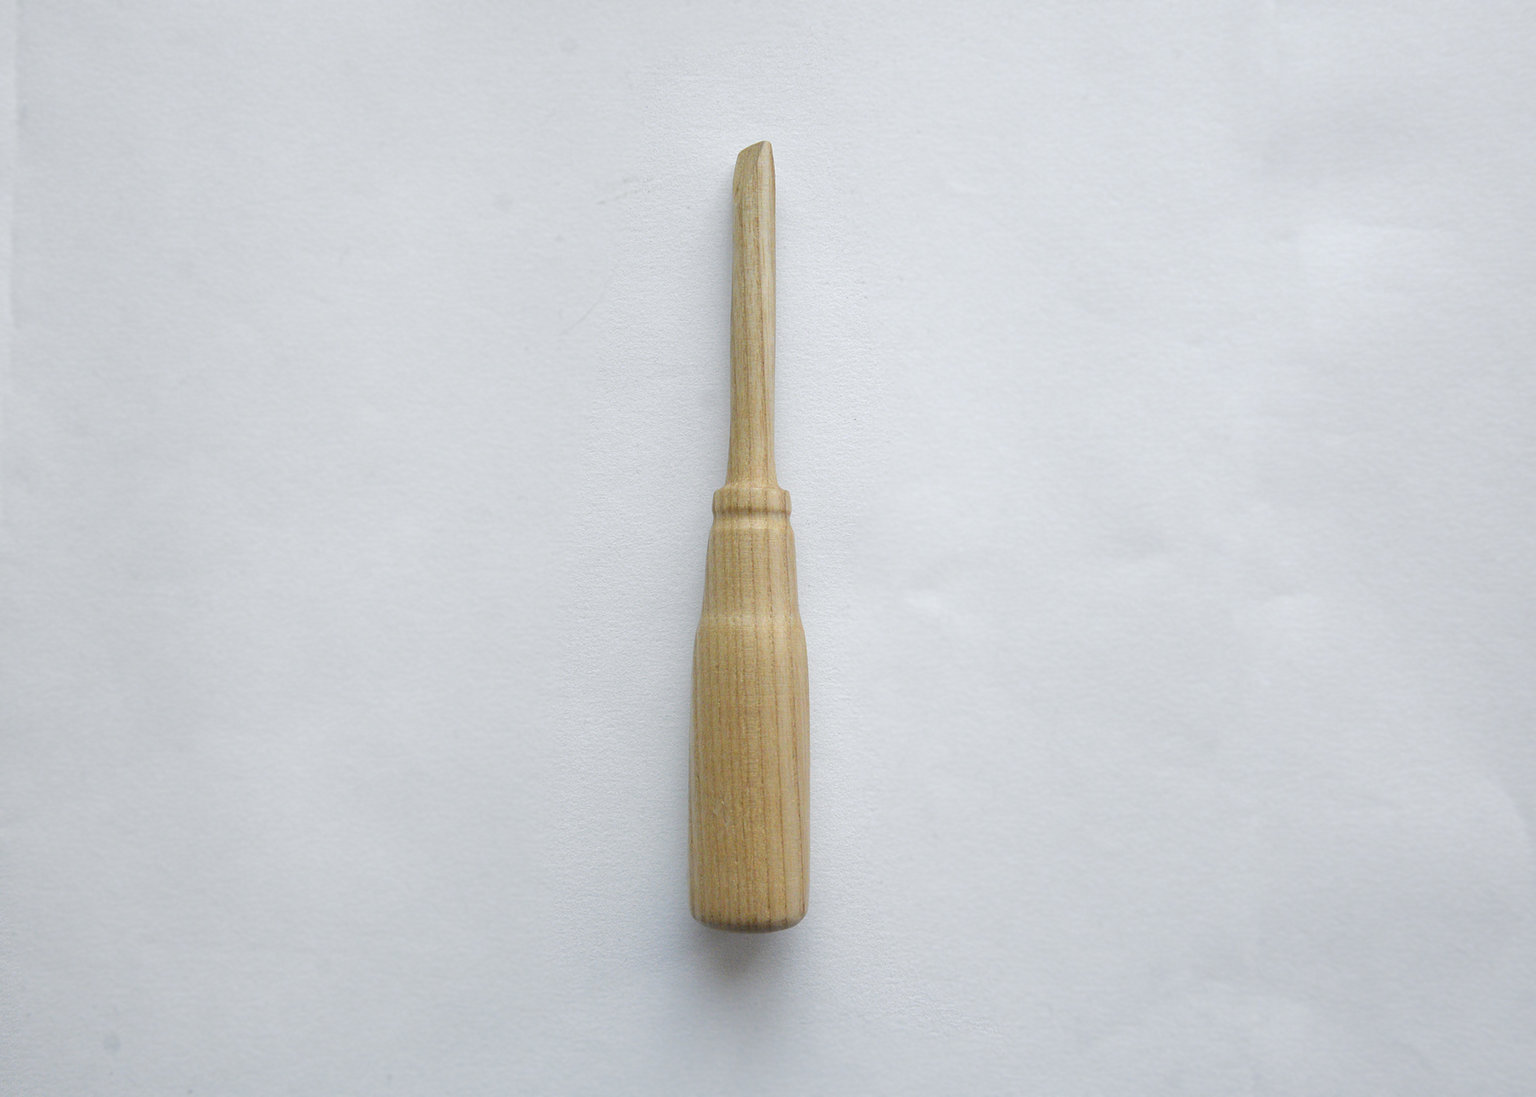 Handmade wooden screwdriver